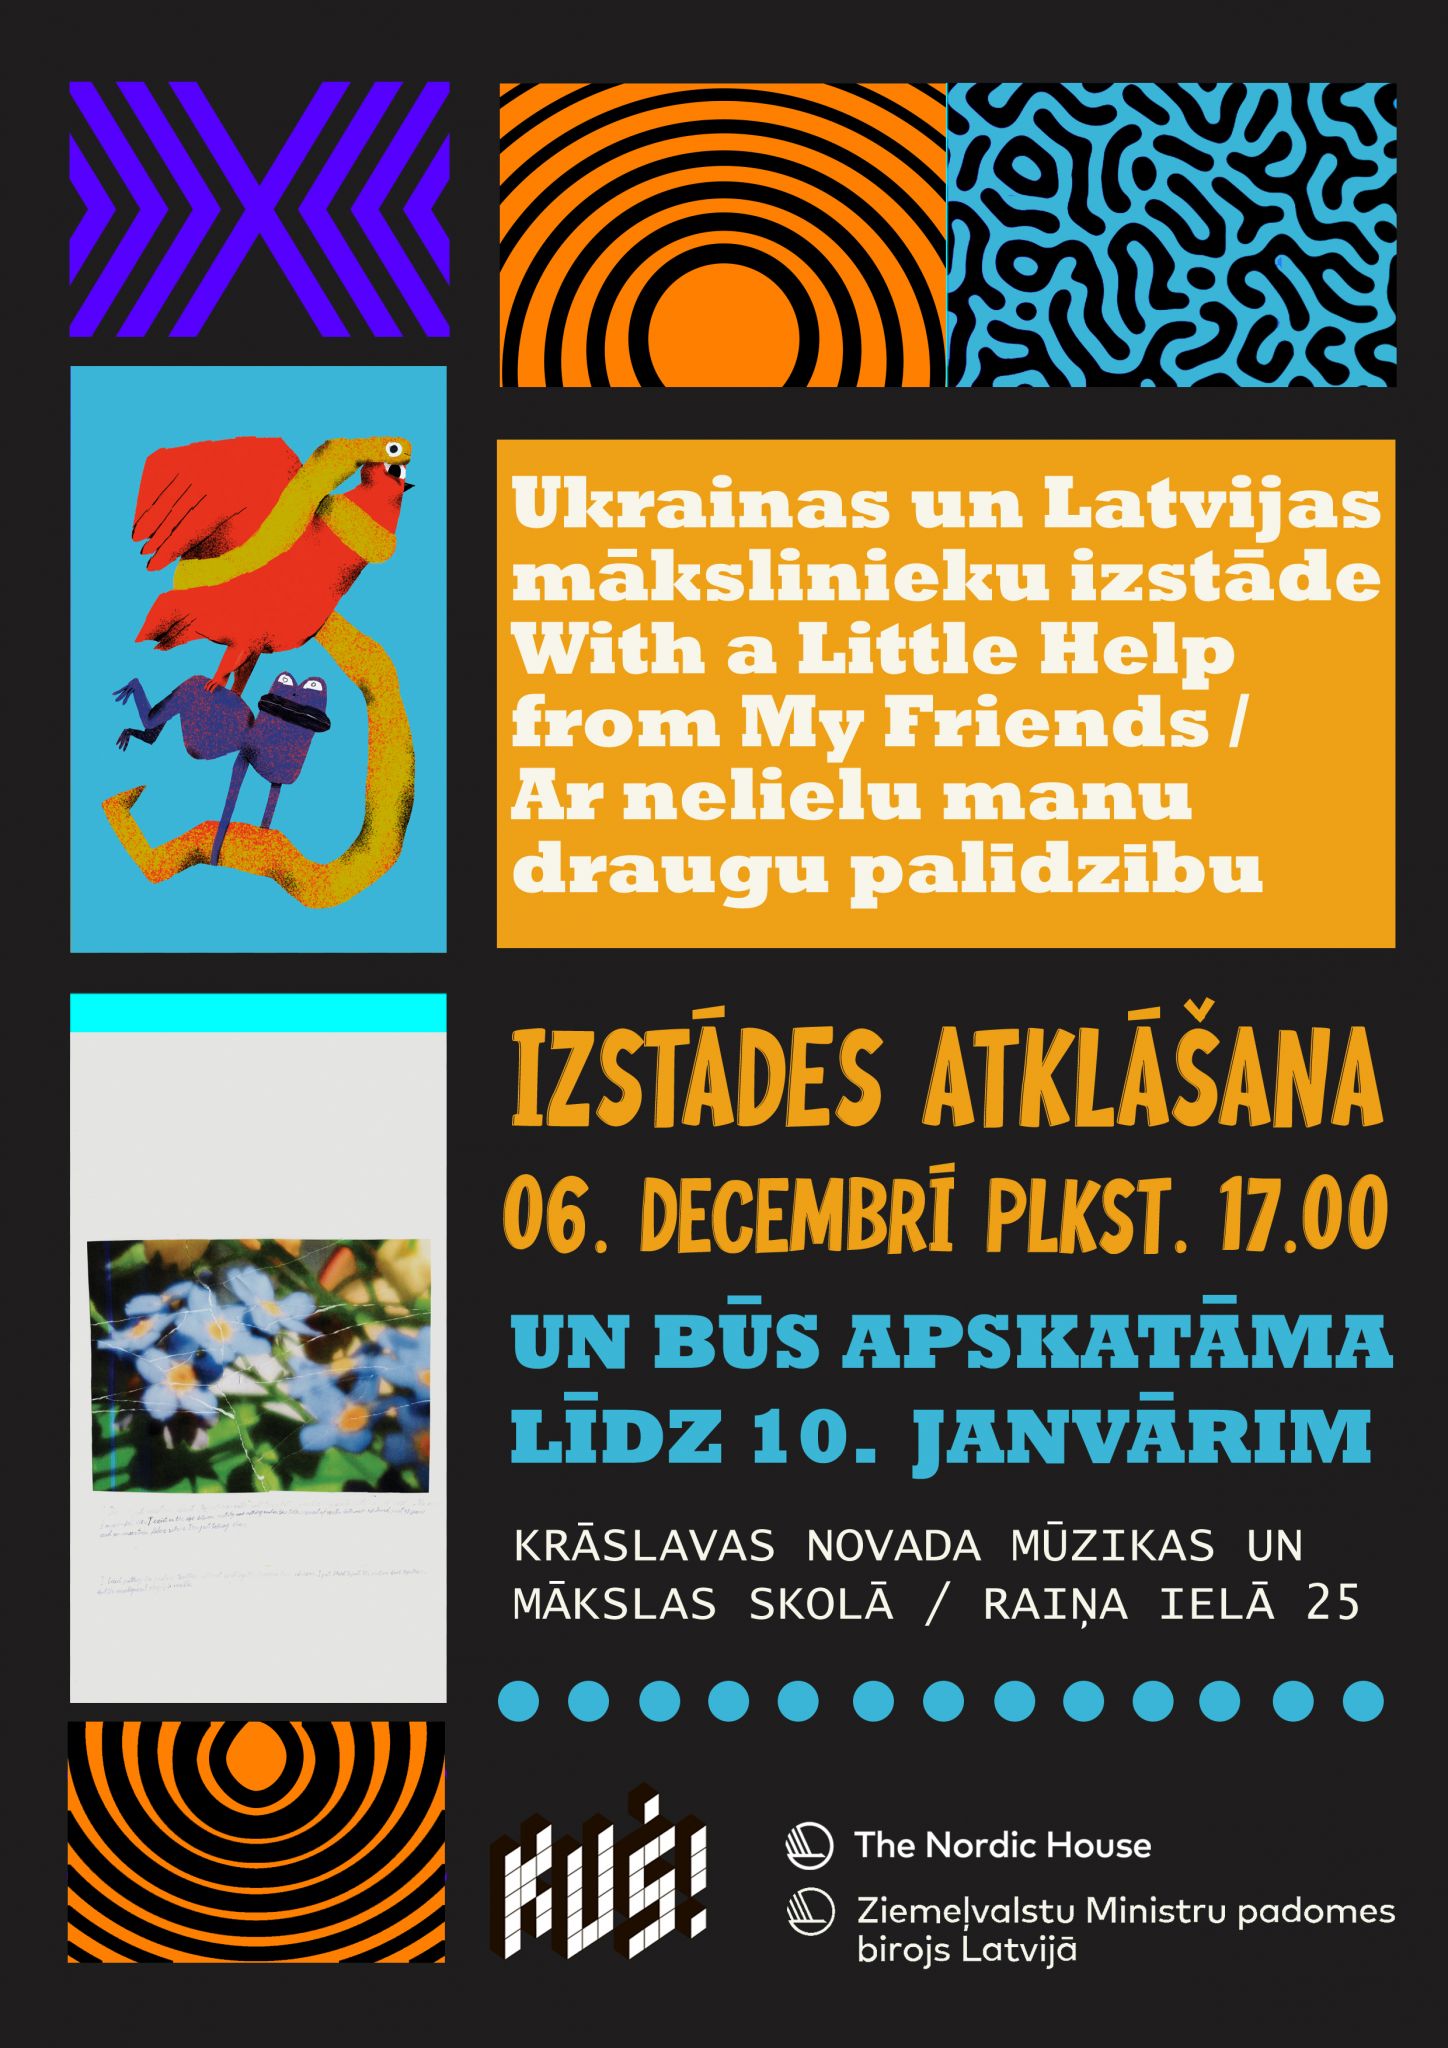 Exhibition of Ukrainian and Latvian Artists in Krāslava